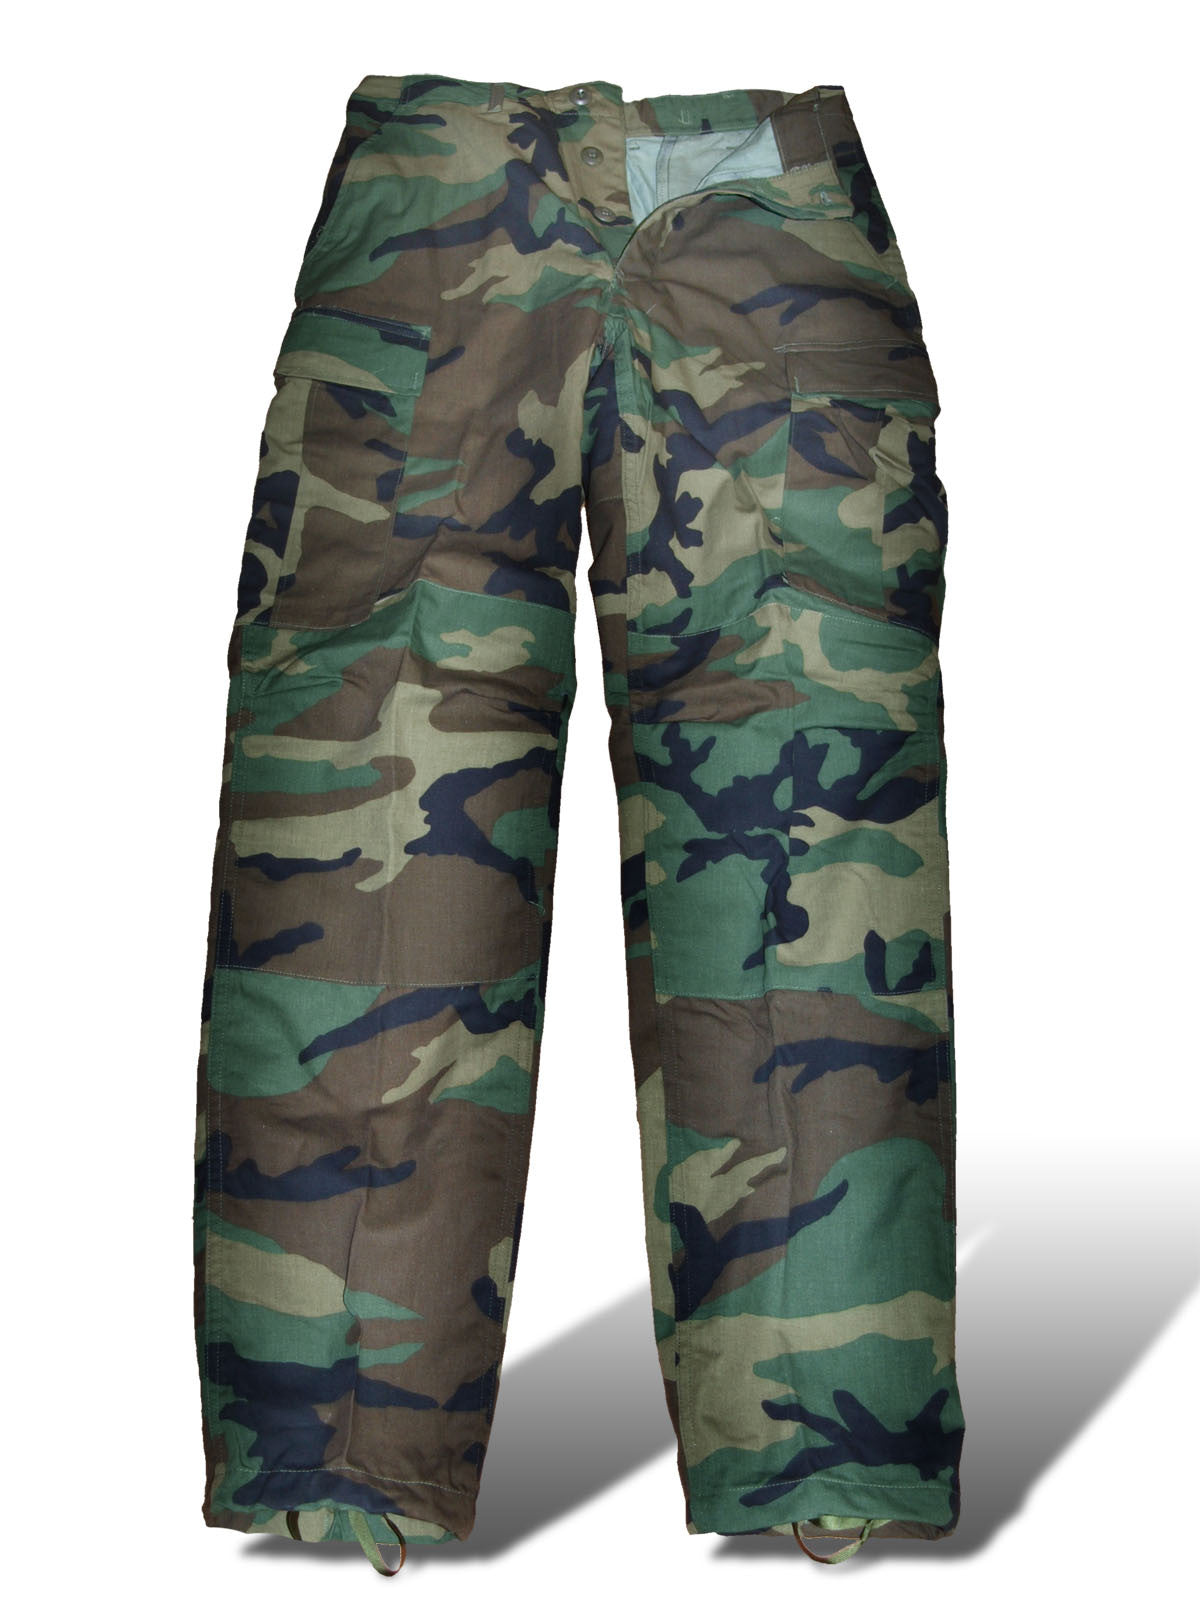 army bdu pants